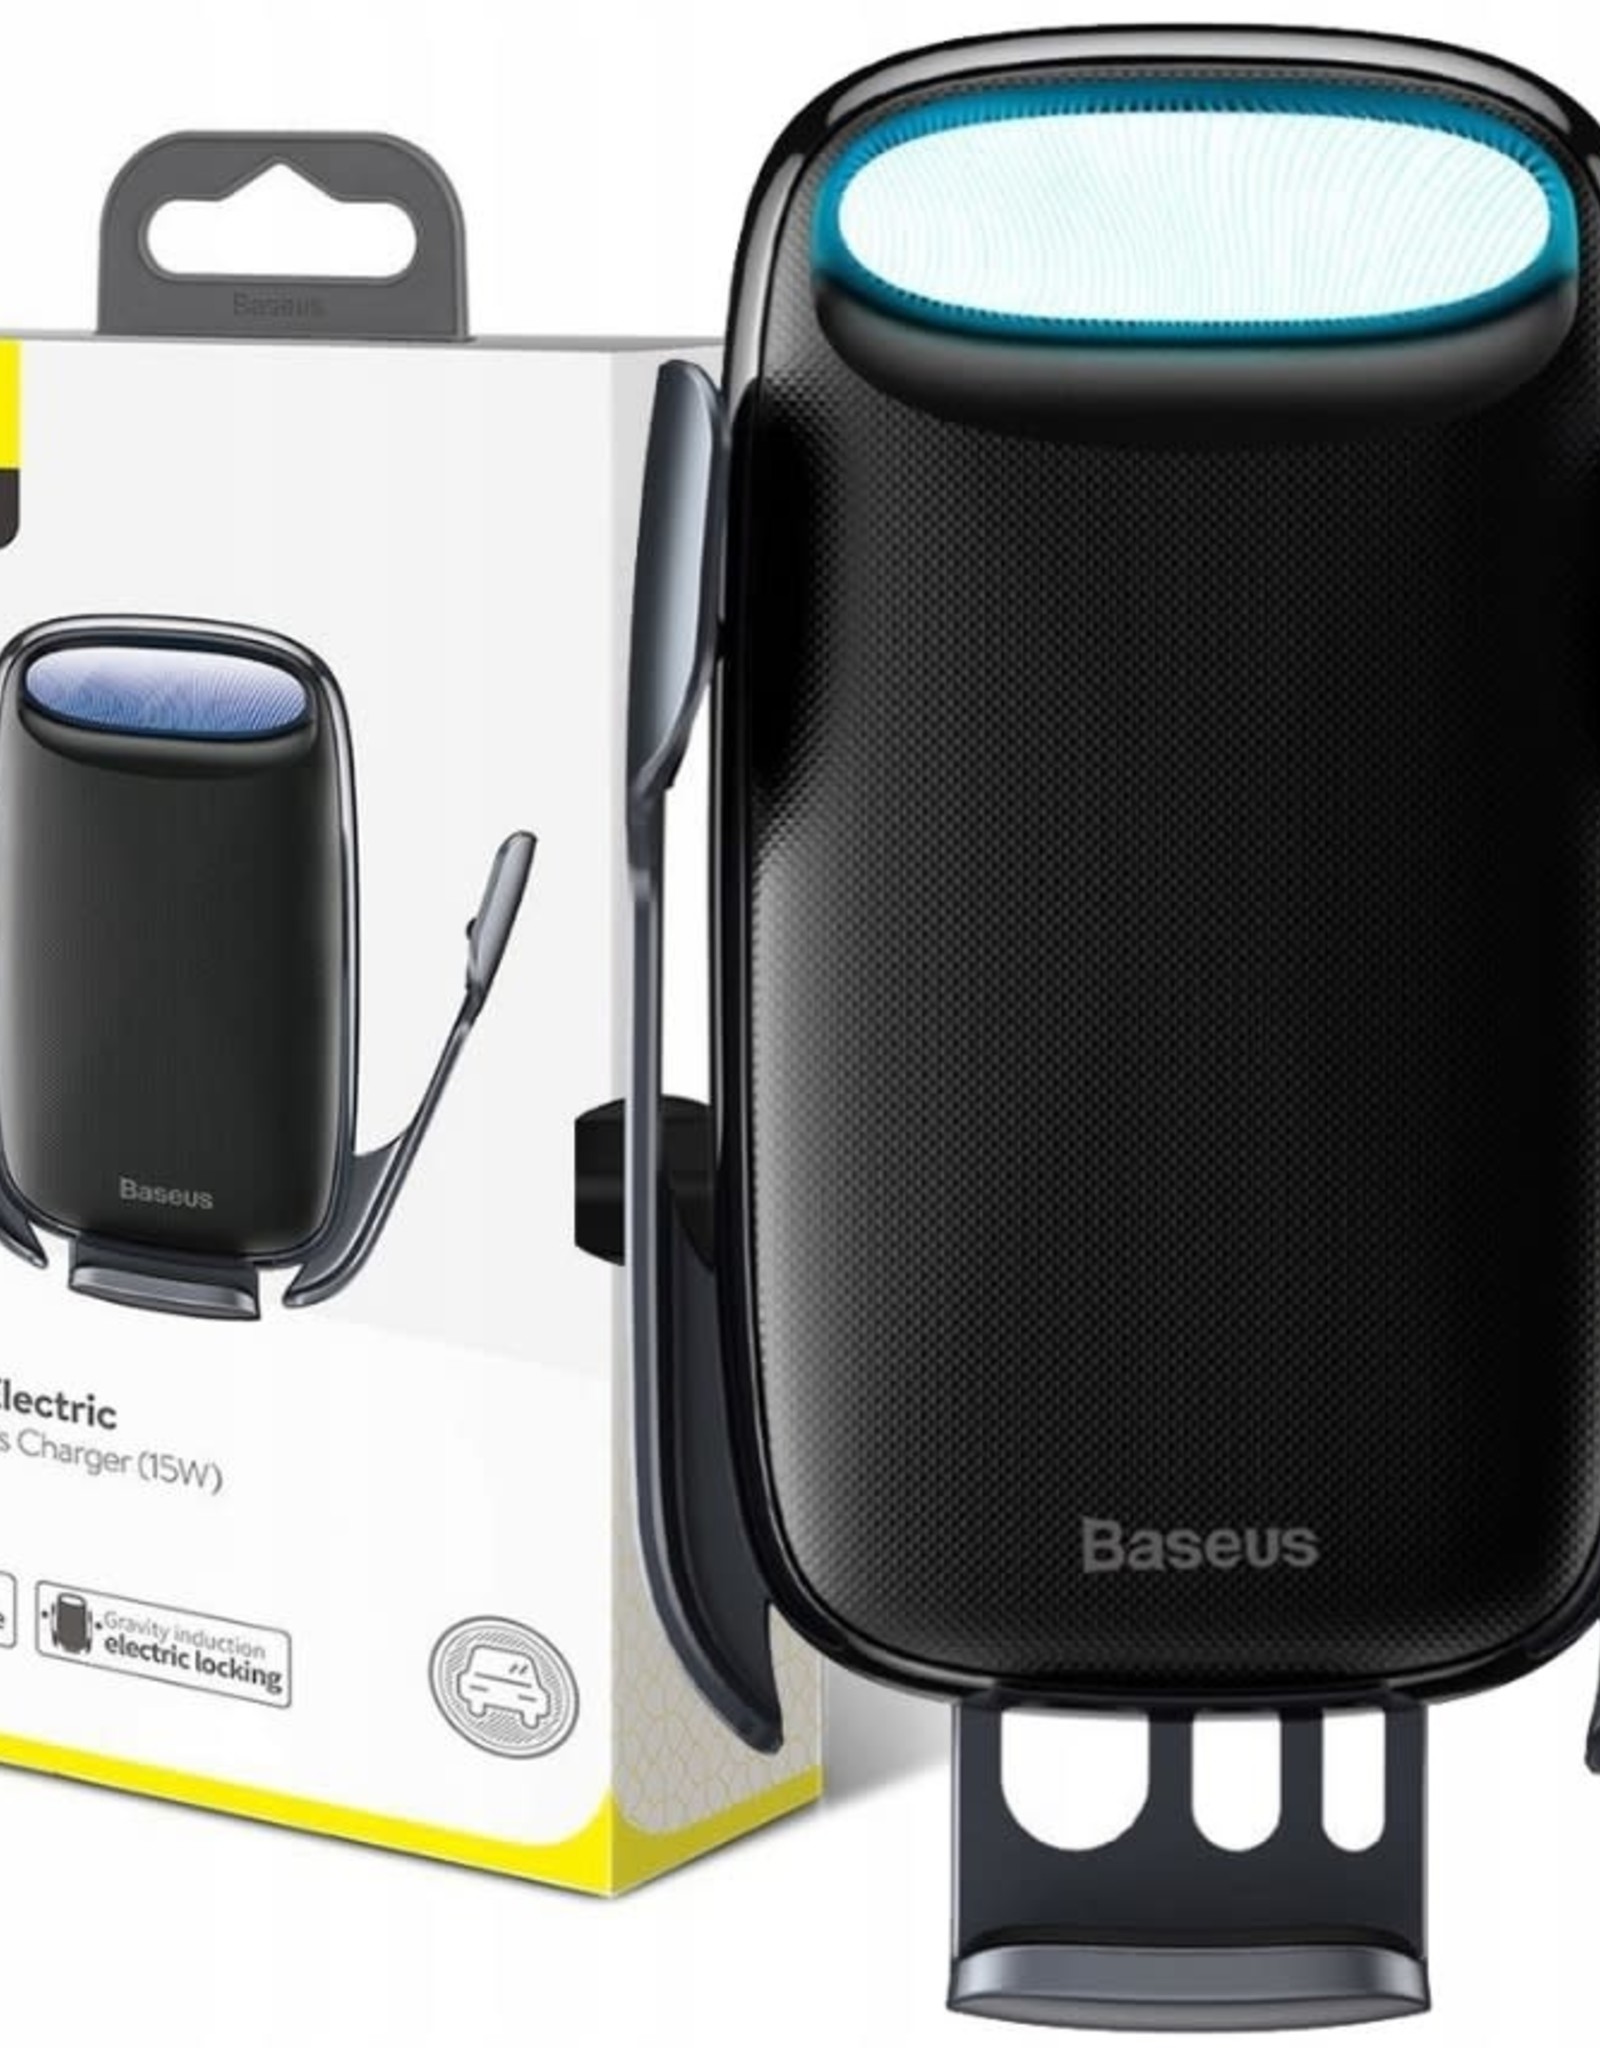 Baseus Baseus Milky Way Electric Bracket Wireless Charger (15W) Black